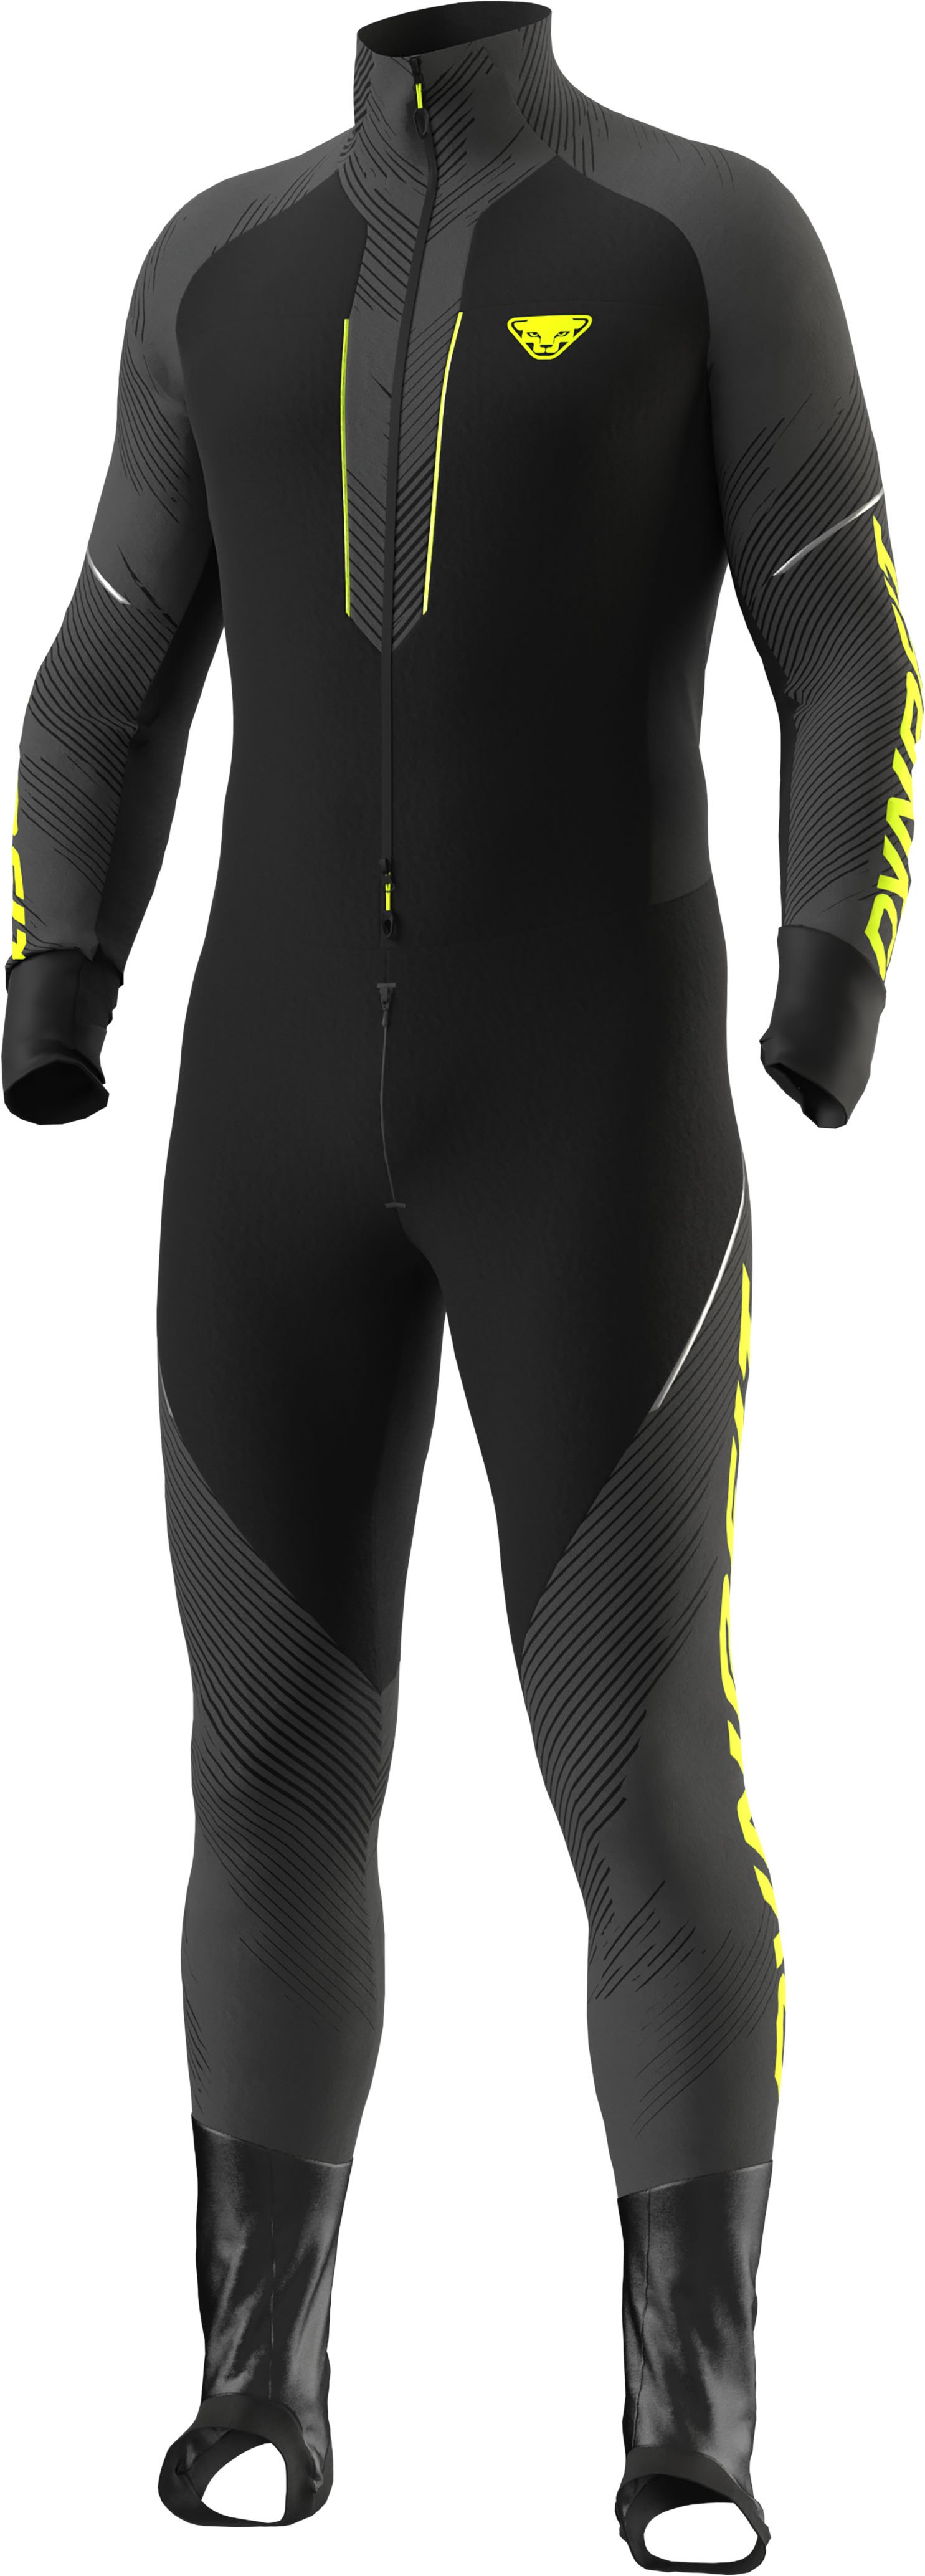 Dynafit DNA 2 M Racing Suit